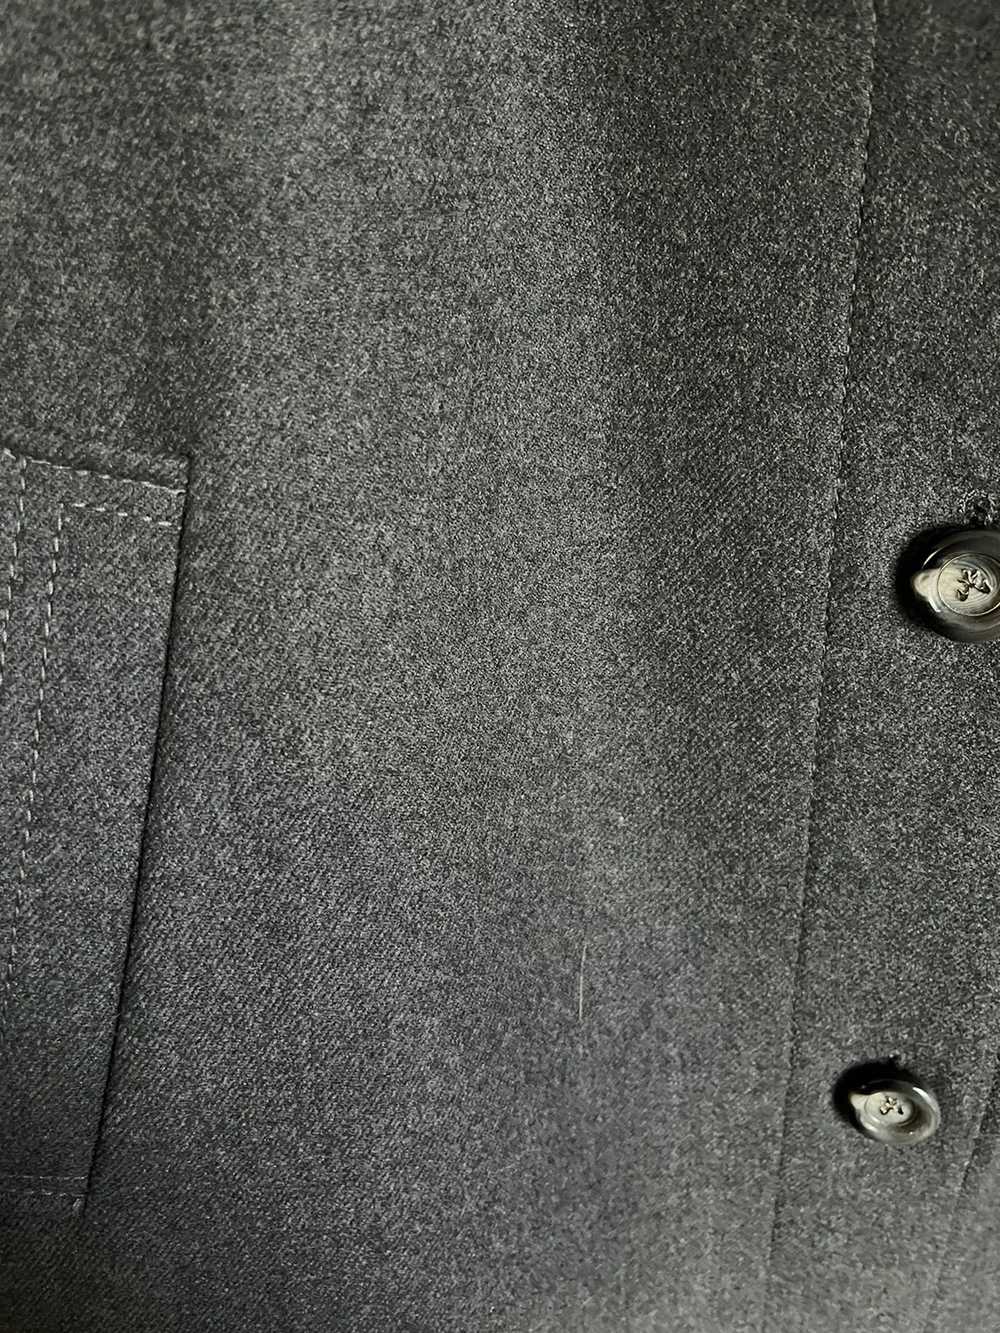 Cashmere & Wool × Mink Fur Coat × Vintage Vintage… - image 5